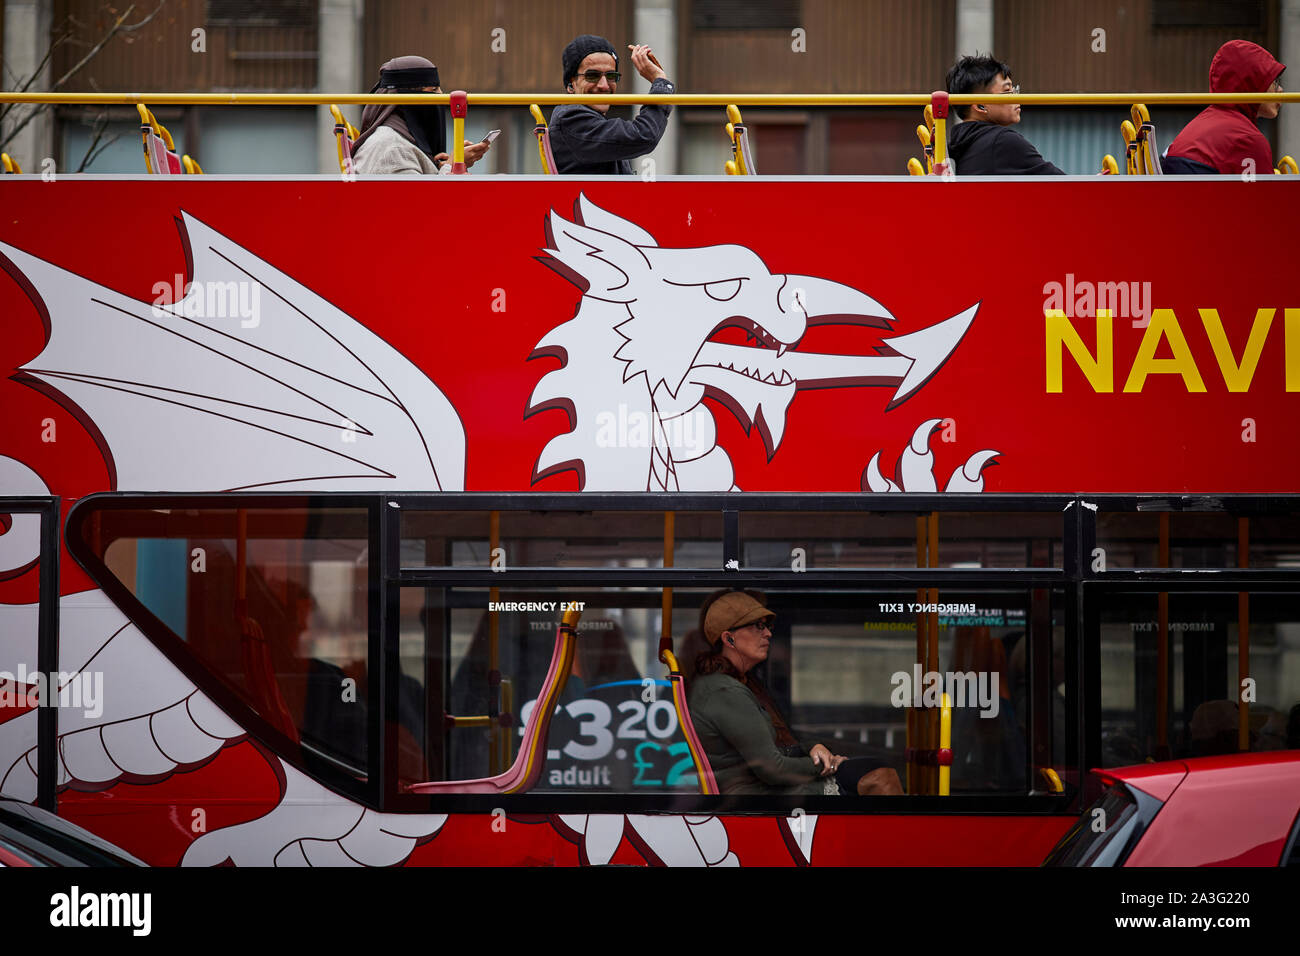 Cardiff Wales, oben offene touristische Hopfen Der Hopfen auf Doppeldeckerbusses mit Dragon Logo Stockfoto